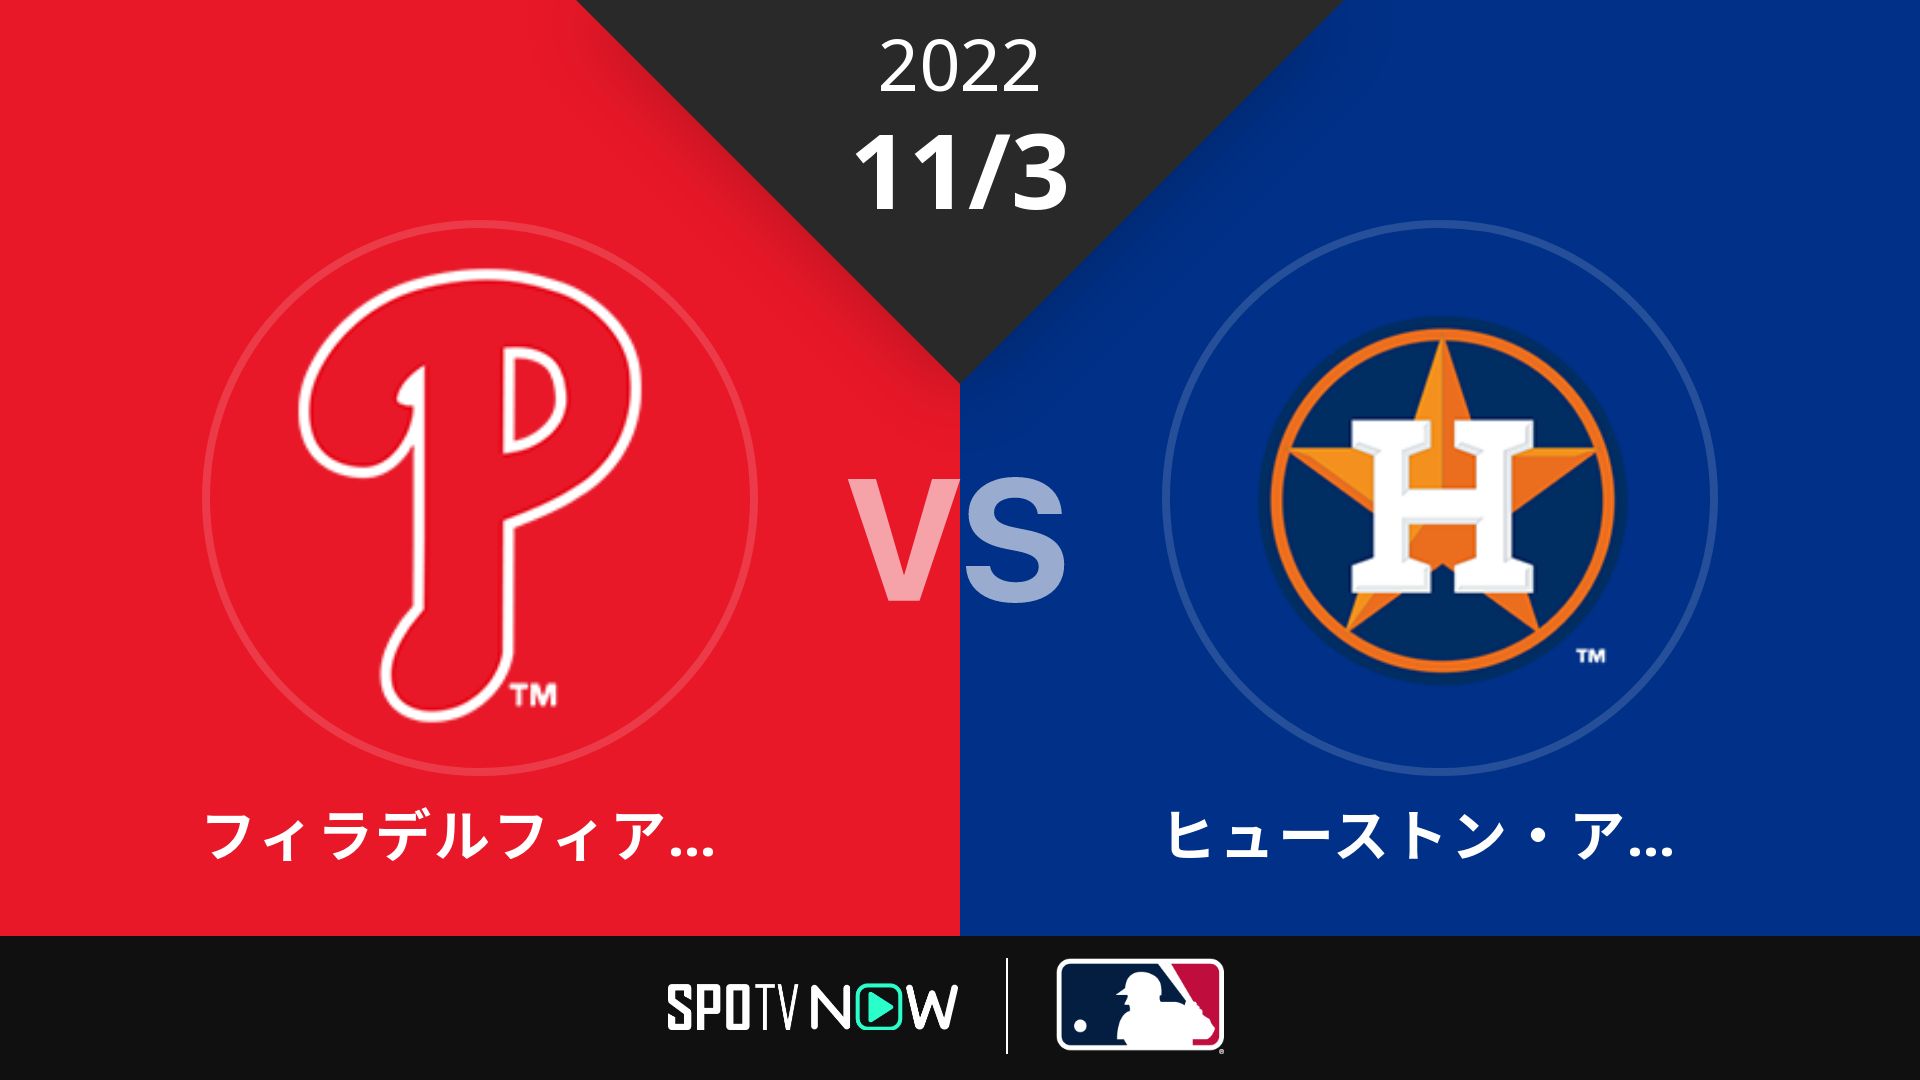 2022/11/3 フィリーズ vs アストロズ [MLB]